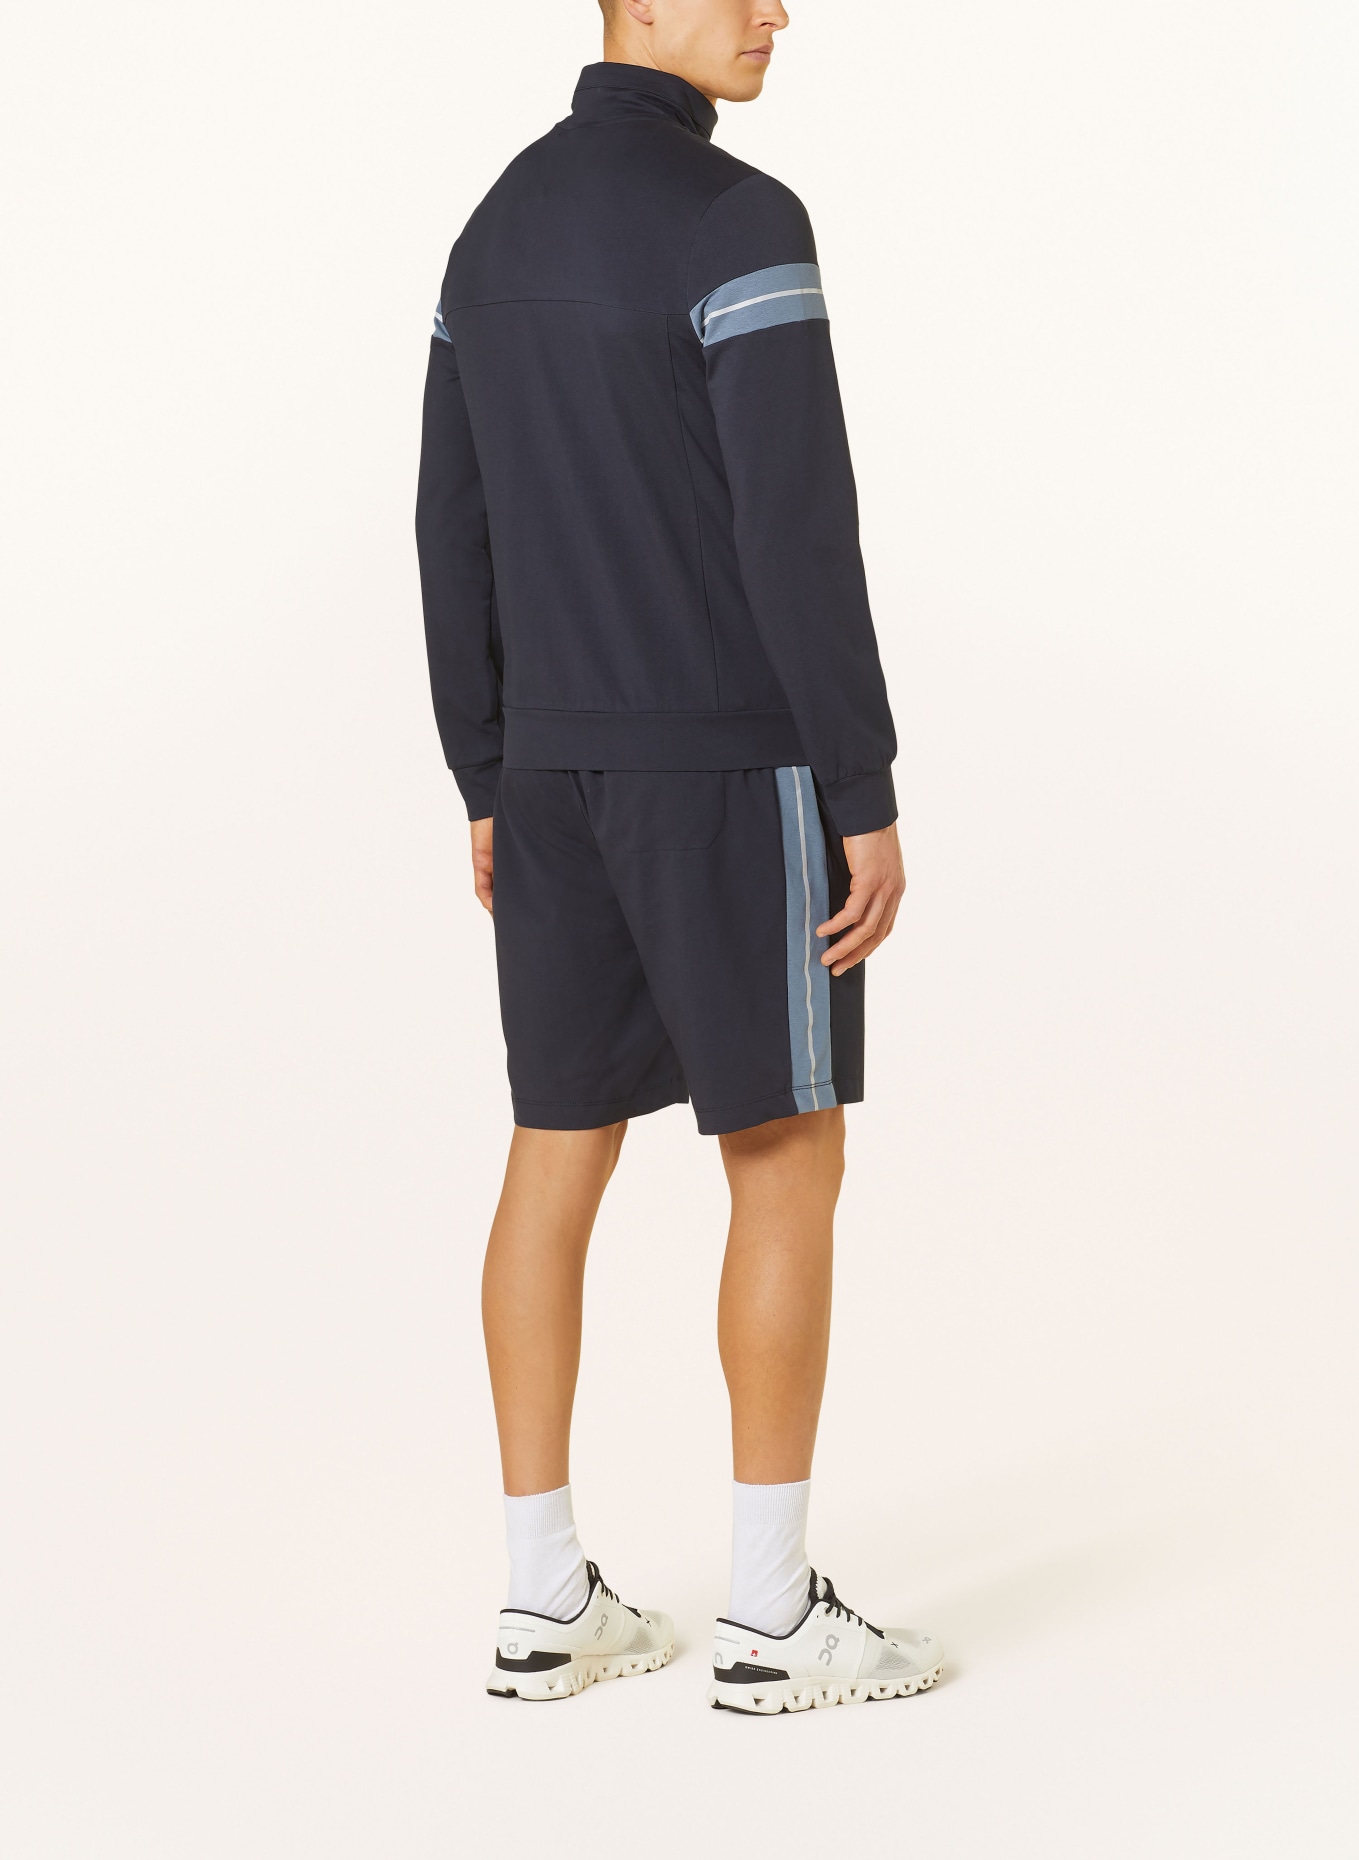 JOY sportswear Sweat shorts JESKO regular fit, Color: DARK BLUE (Image 3)